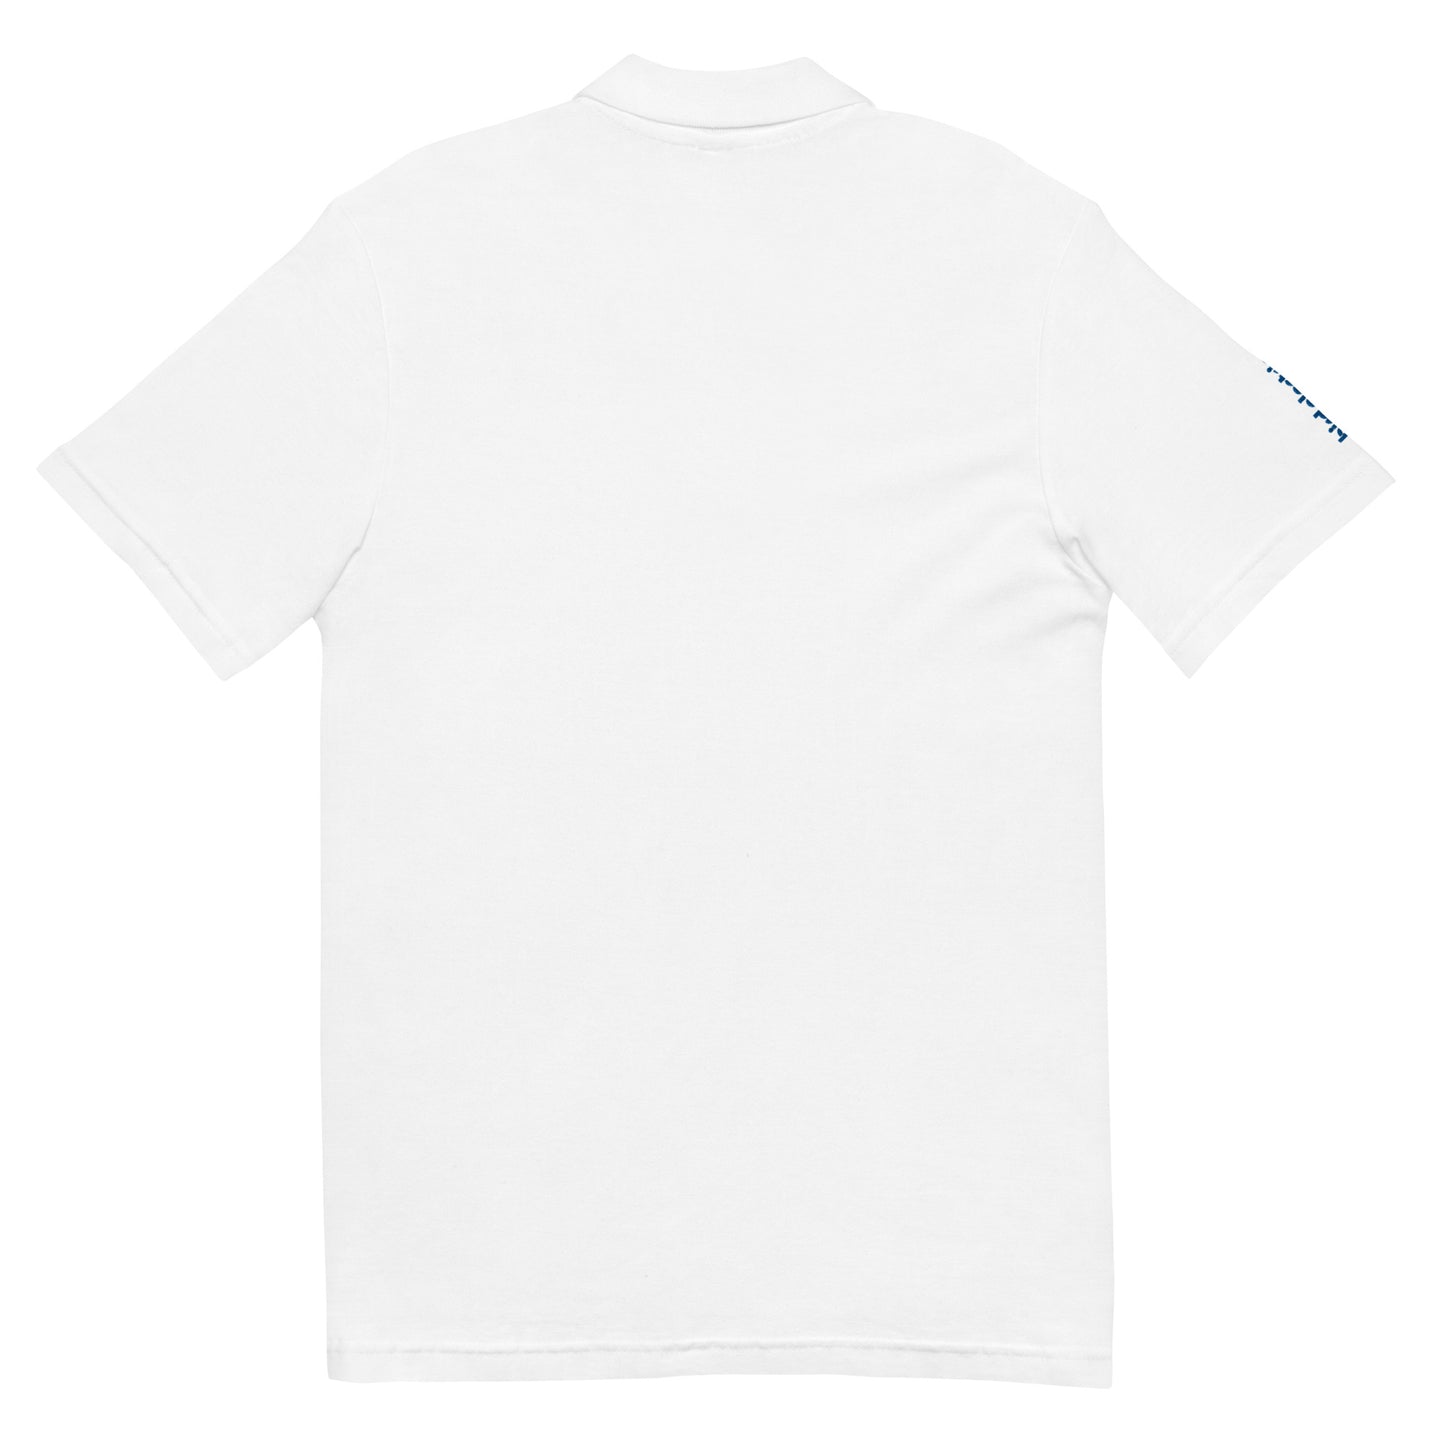 A1A Men’s Pique Polo Shirt - Embroidered